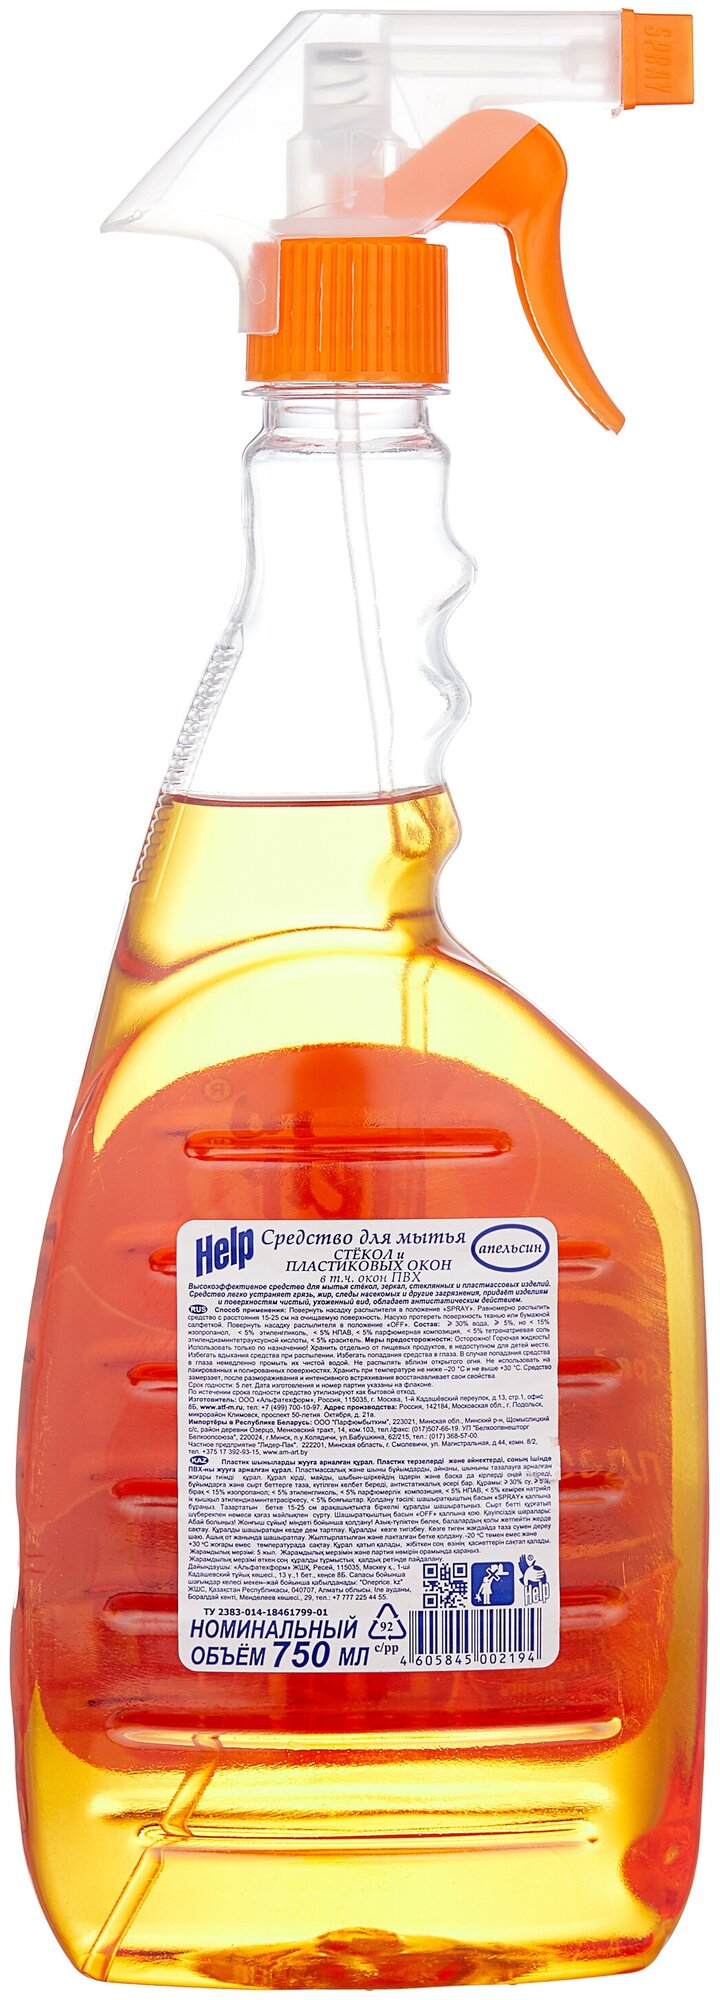 Спрей Help Апельсин для мытья стекол (триггер), 750 мл - фотография № 2